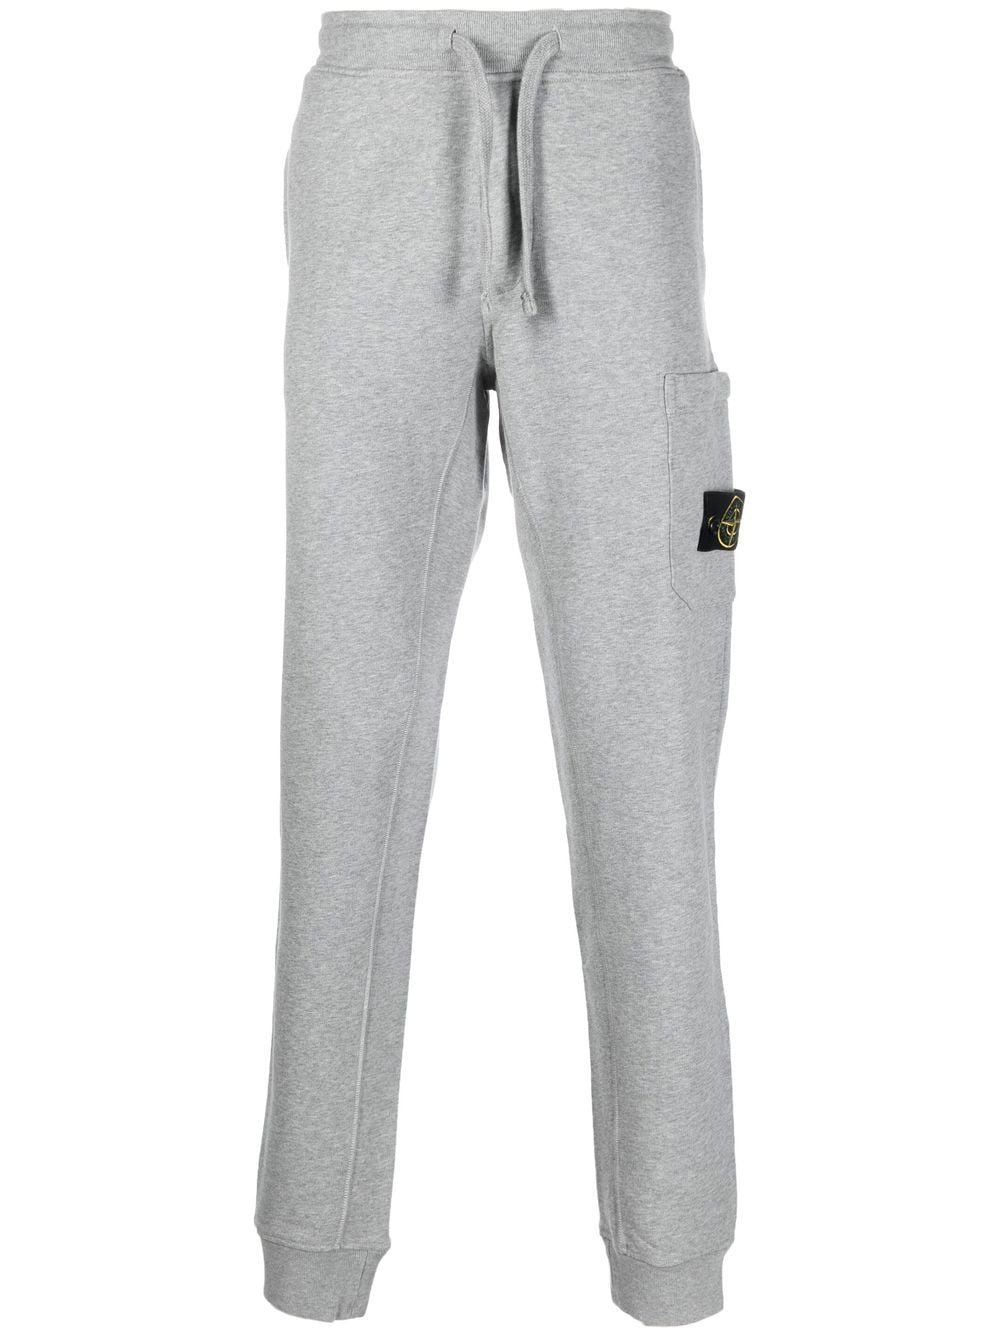 Stone Island Pantalon de jogging gris 64520 - Lothaire boutiques